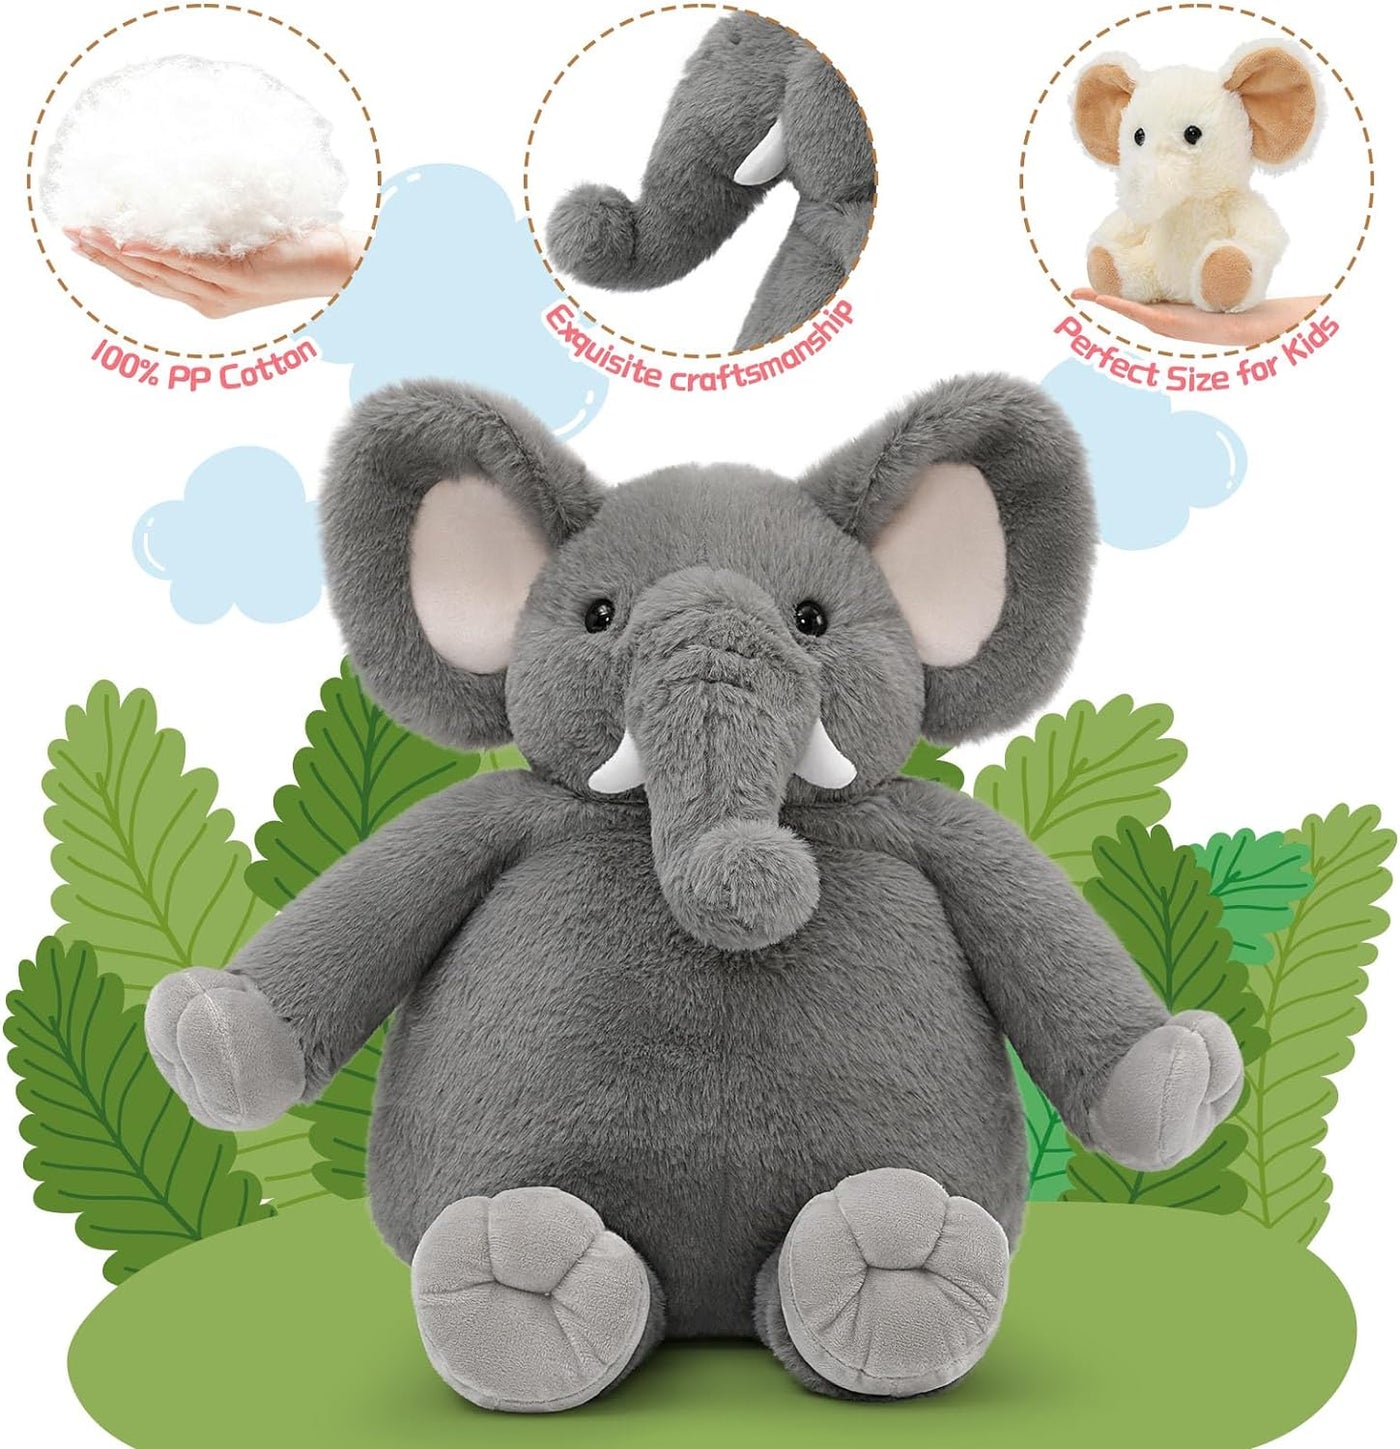 Elephant Plush Toy Set, Grey, 20 Inches